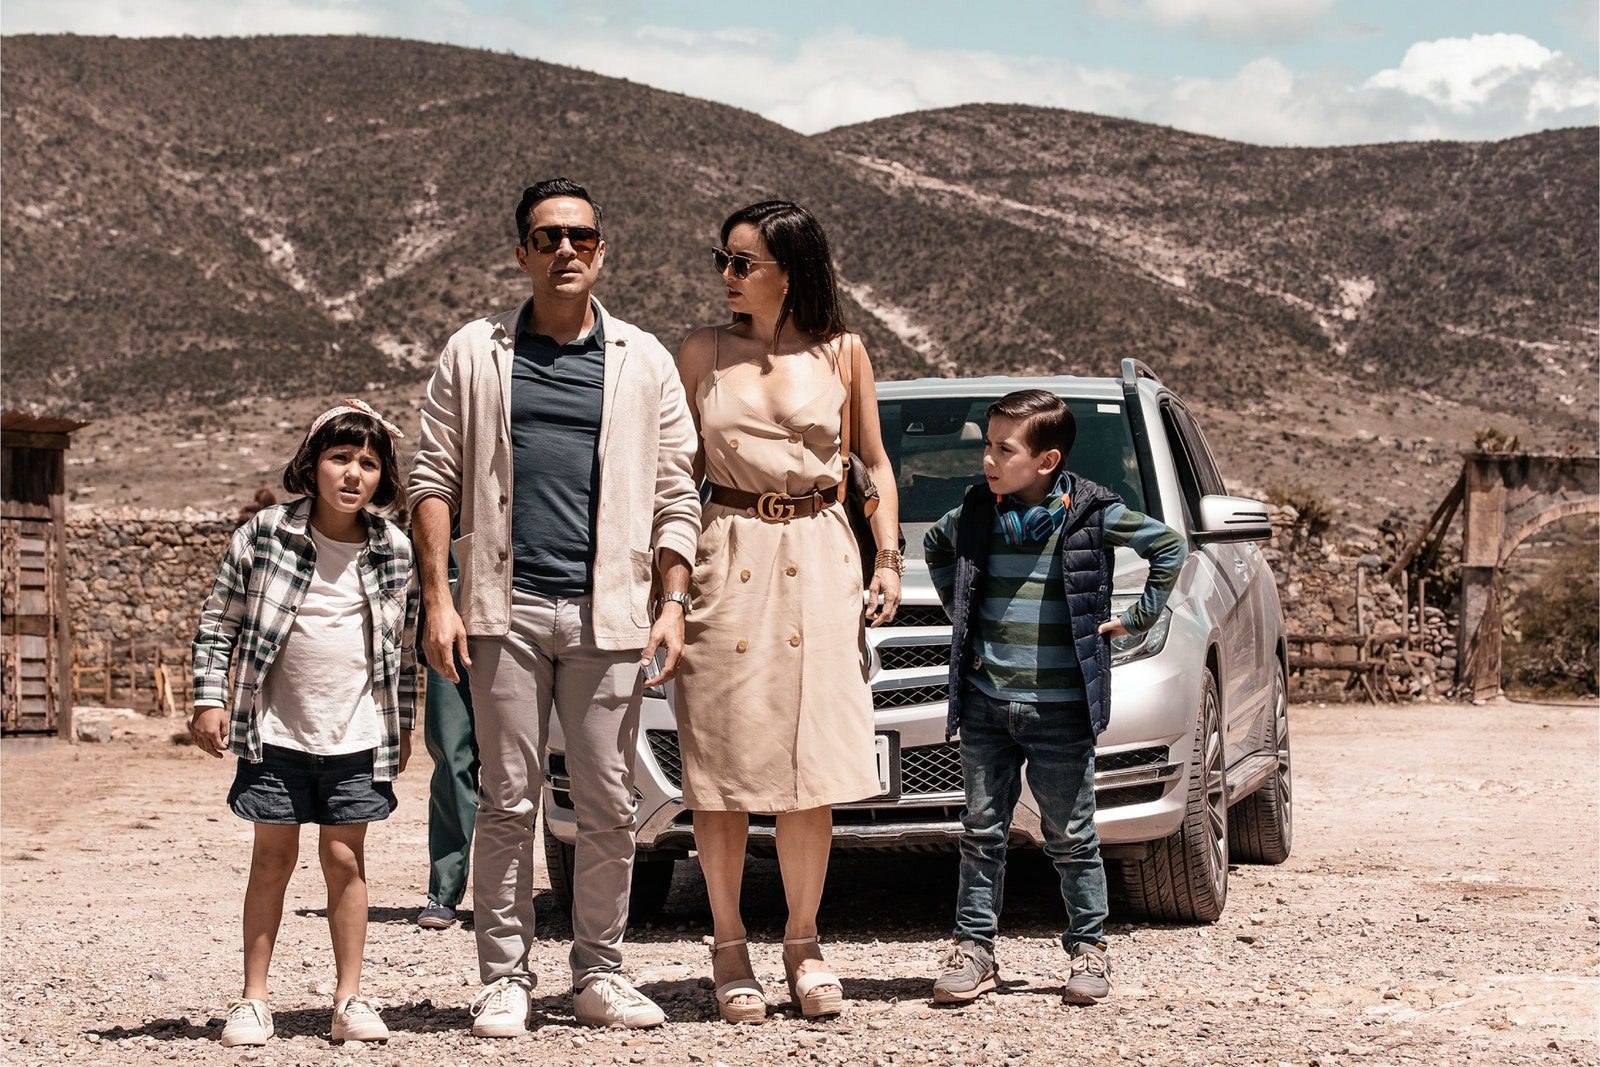 Saiba tudo sobre Viva o México (¡Que Viva México!) filme que está no TOP10 da Netflix 2